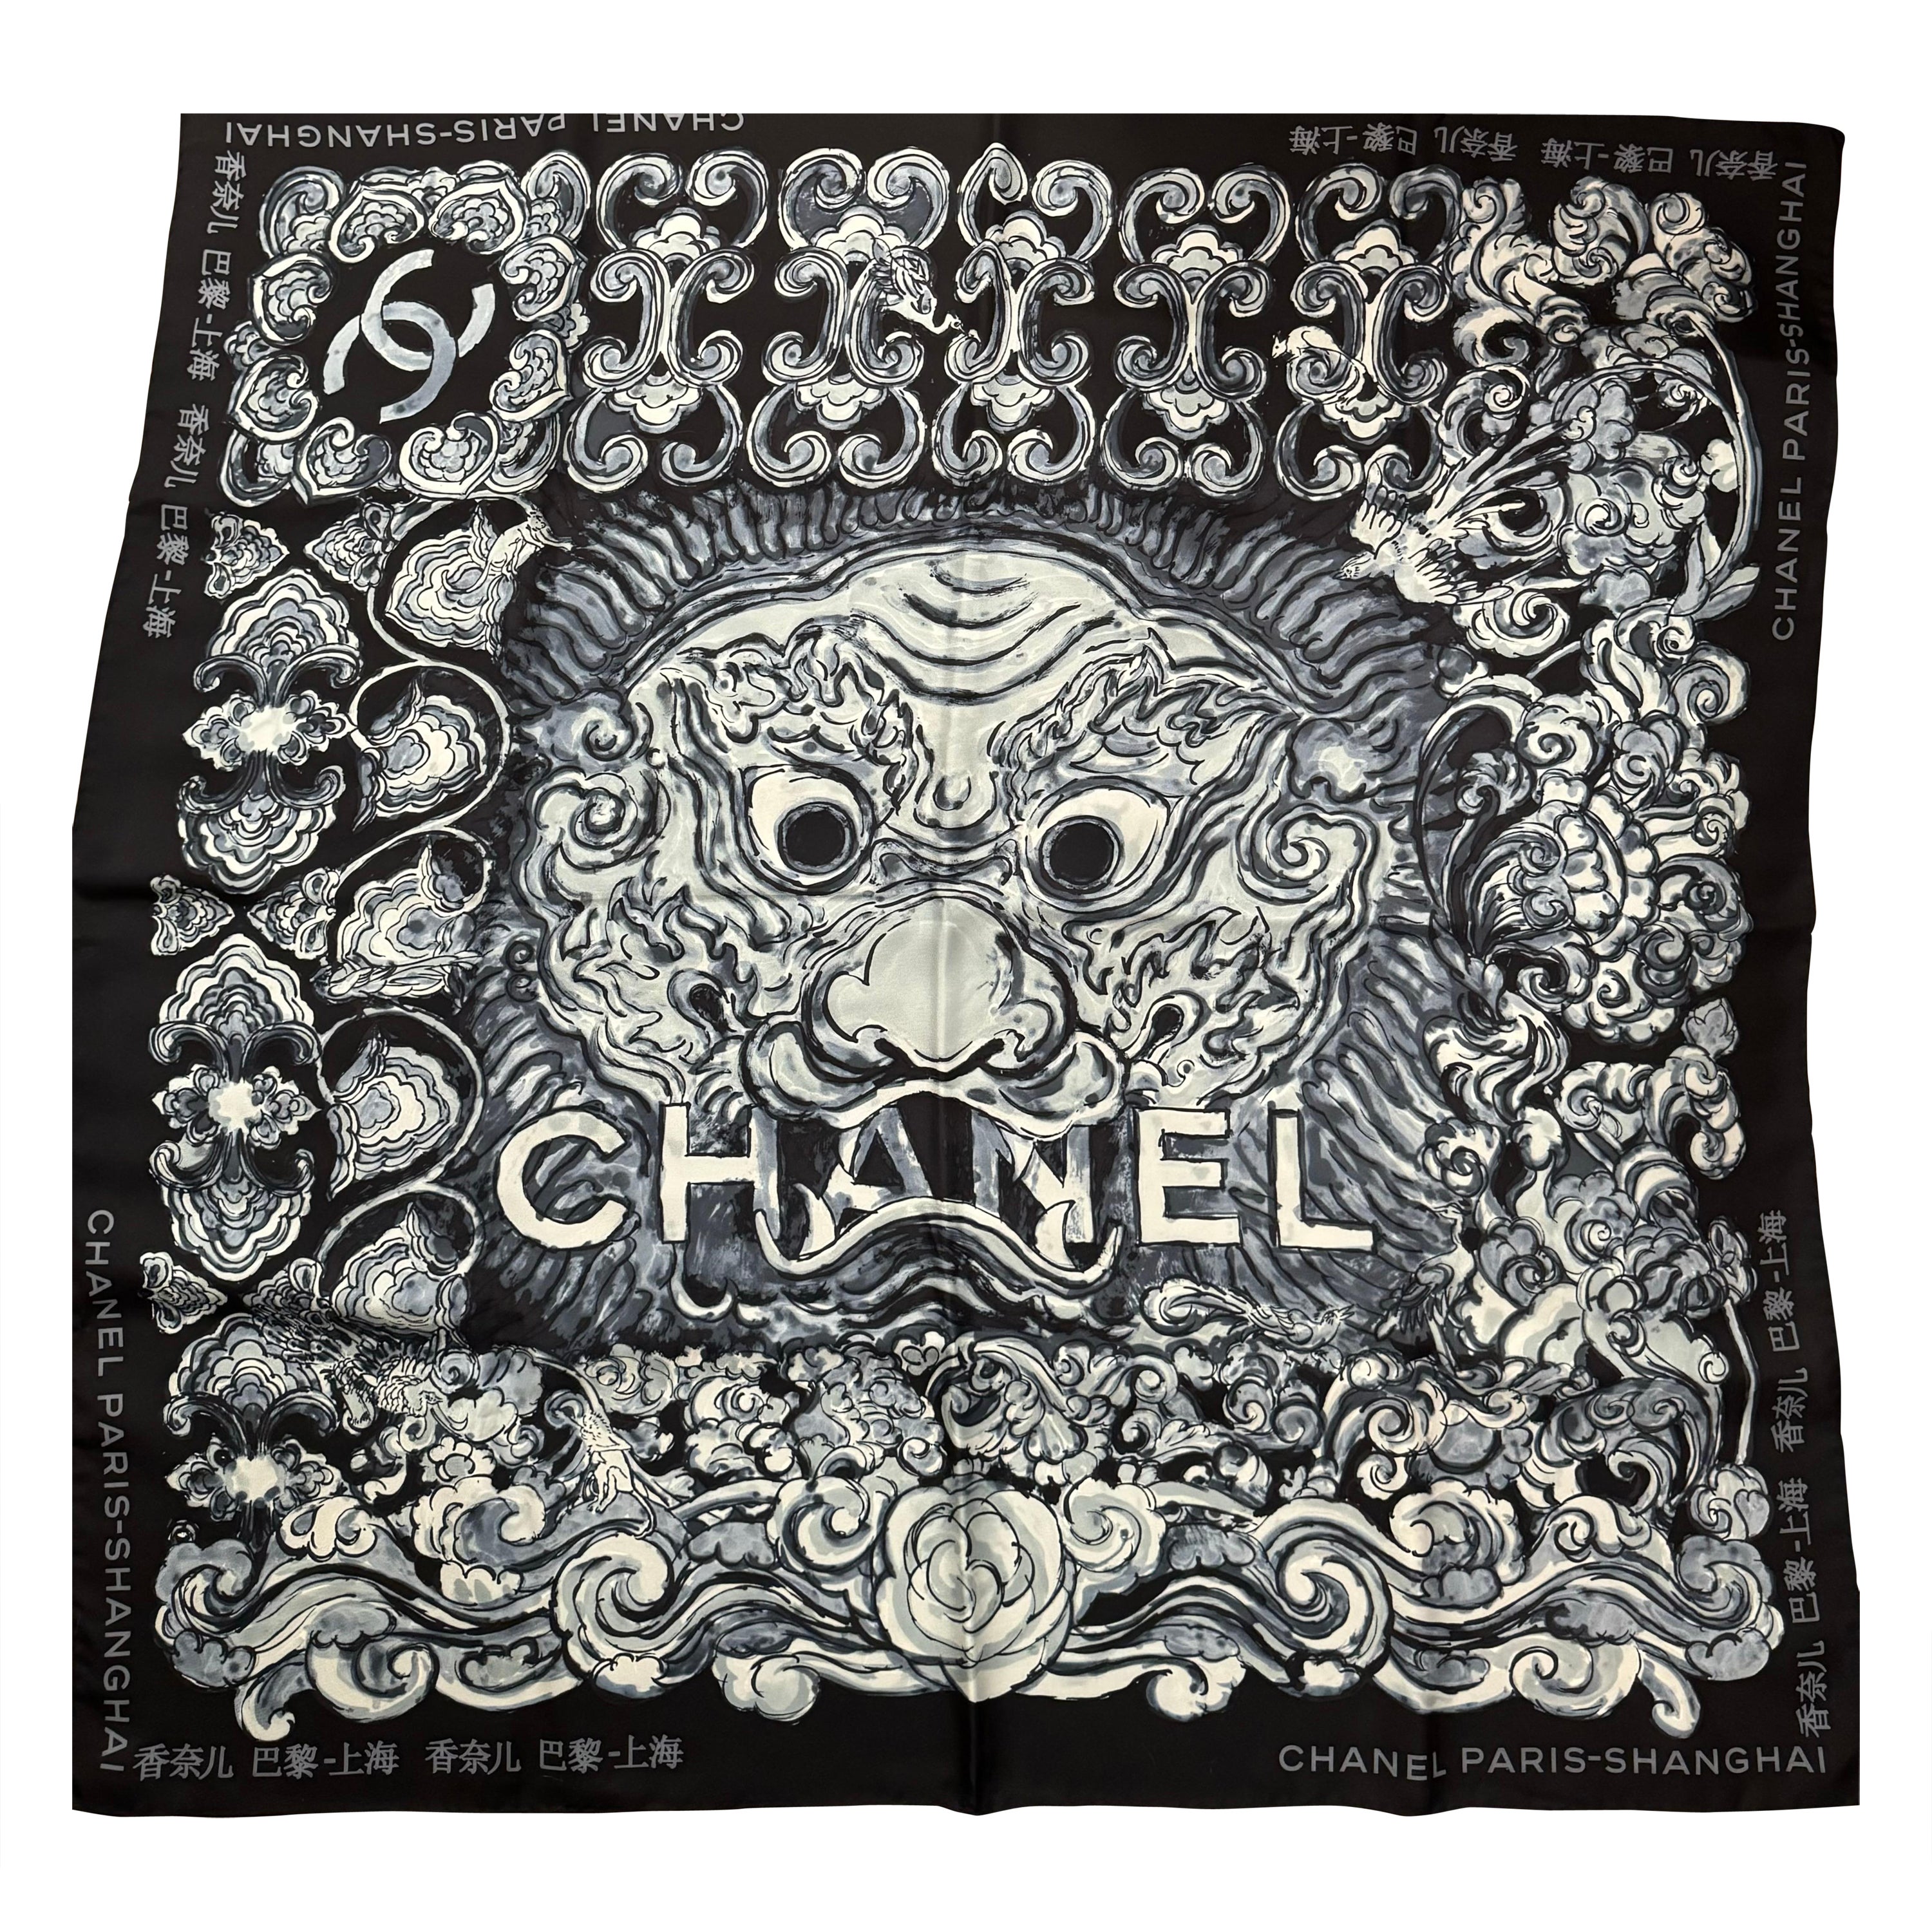 Seltener Chanel Paris Shanghai 2010 Seidenschal in limitierter Auflage 